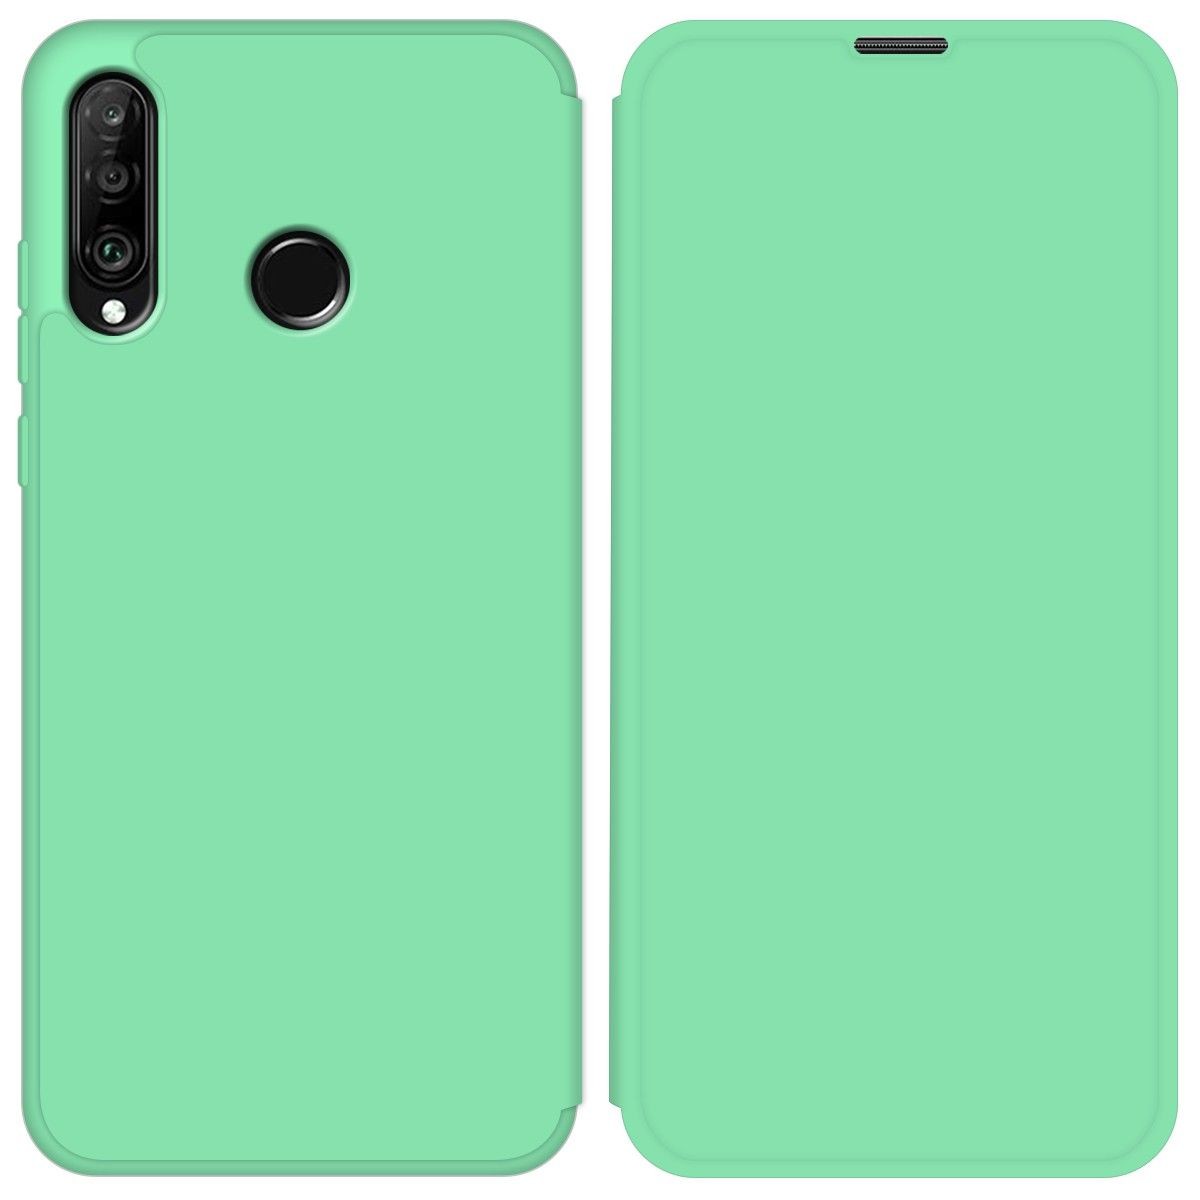 Funda Silicona Líquida con Tapa para Huawei P30 Lite color Verde Pastel